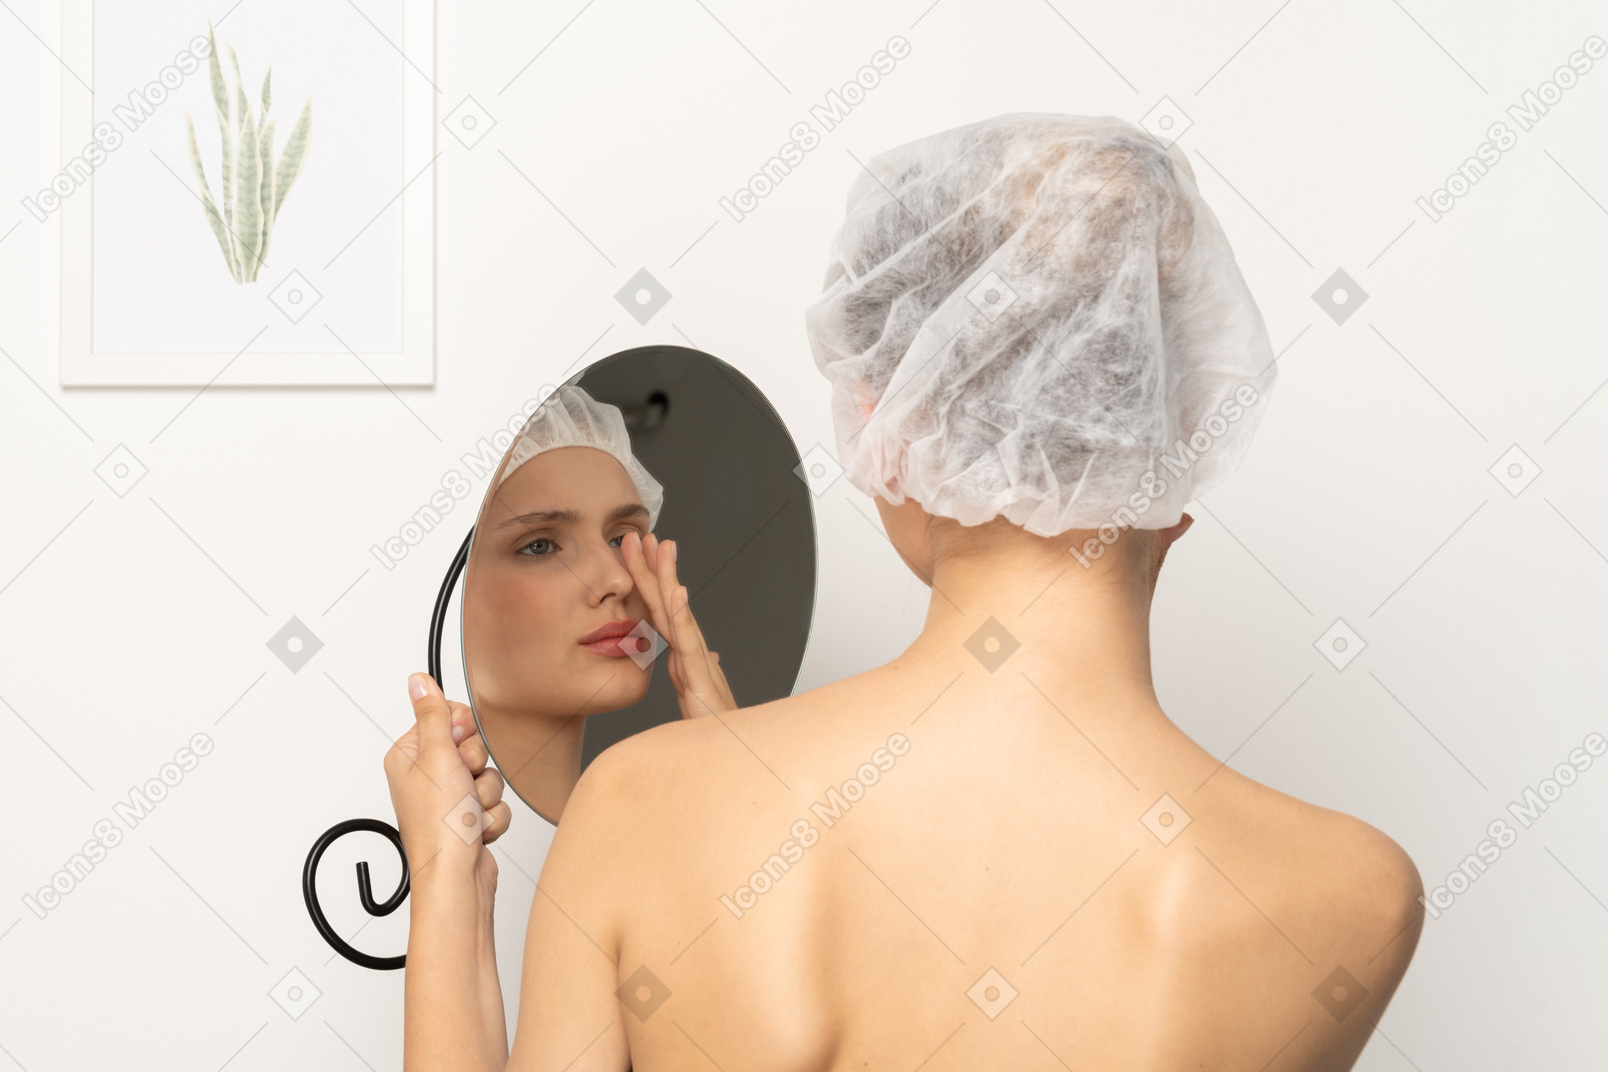 鏡に映った自分の姿を見て医療帽をかぶった不安な女性